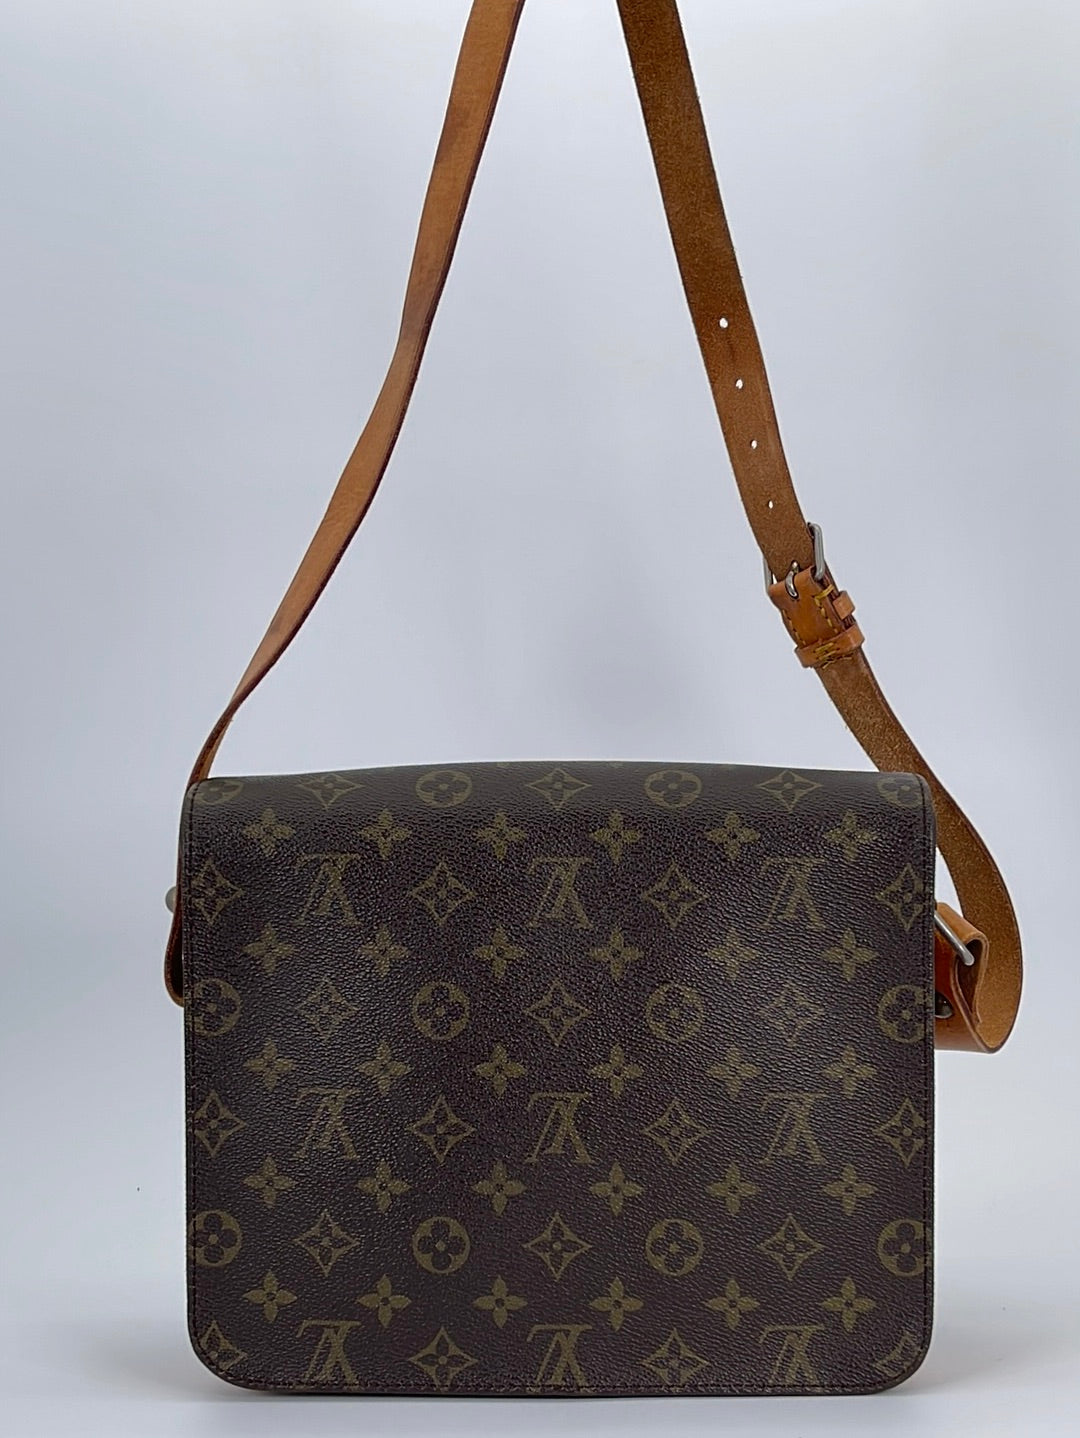 Louis Vuitton Cartouchiere PM Monogram Bag with Dust Bag